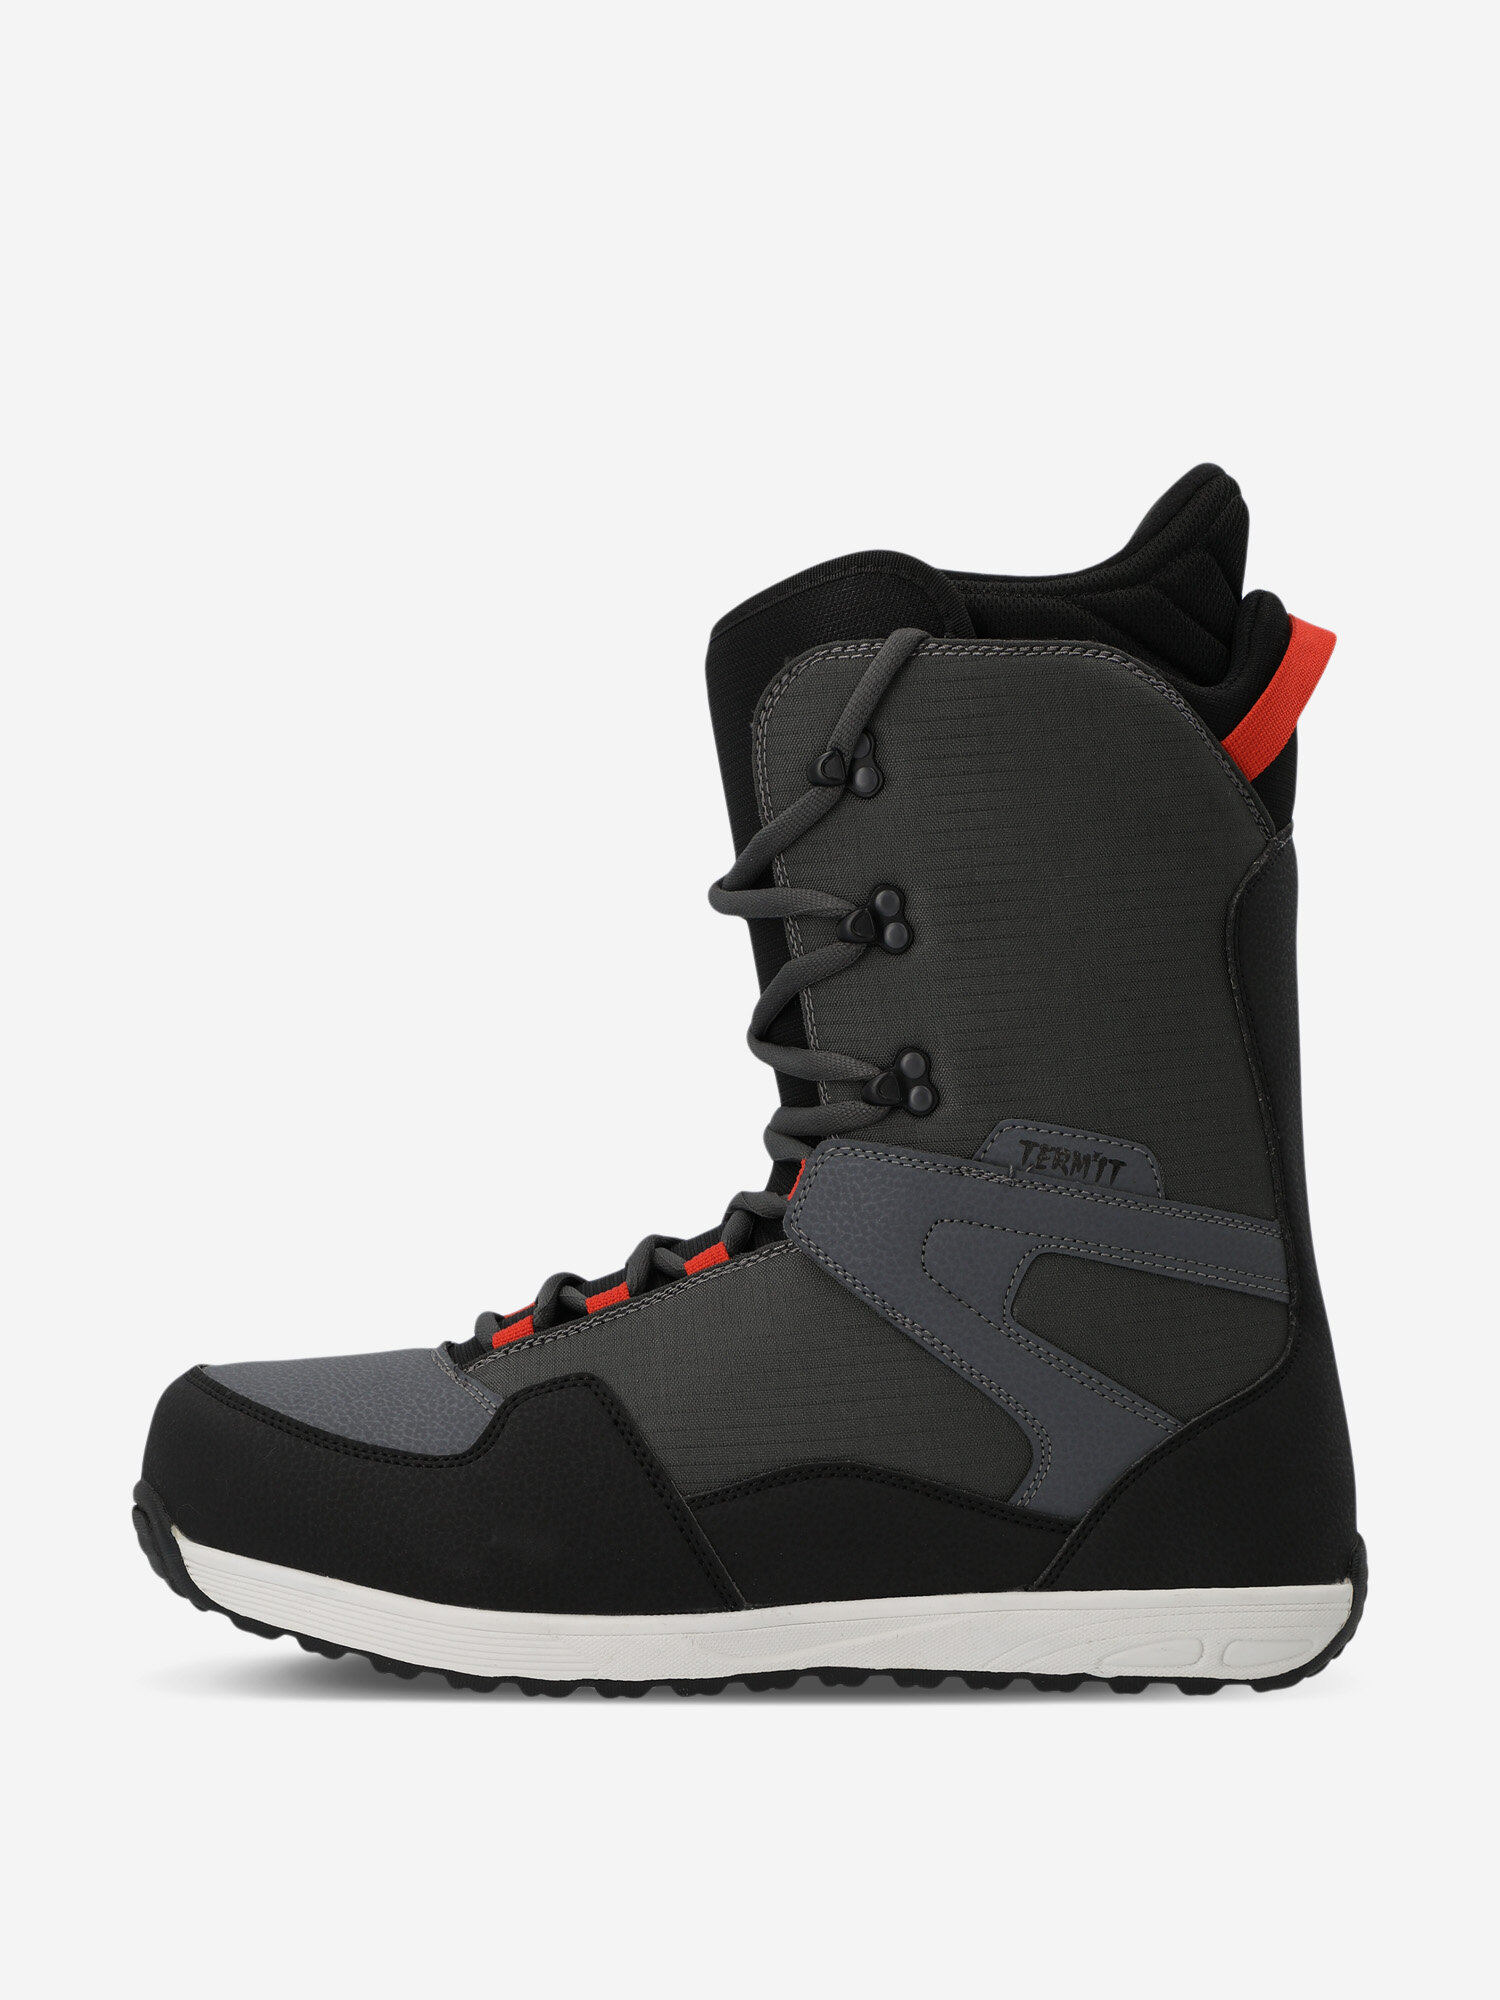 Сноубордические ботинки Termit Symbol Черный; RUS: 25 см, Ориг: 25